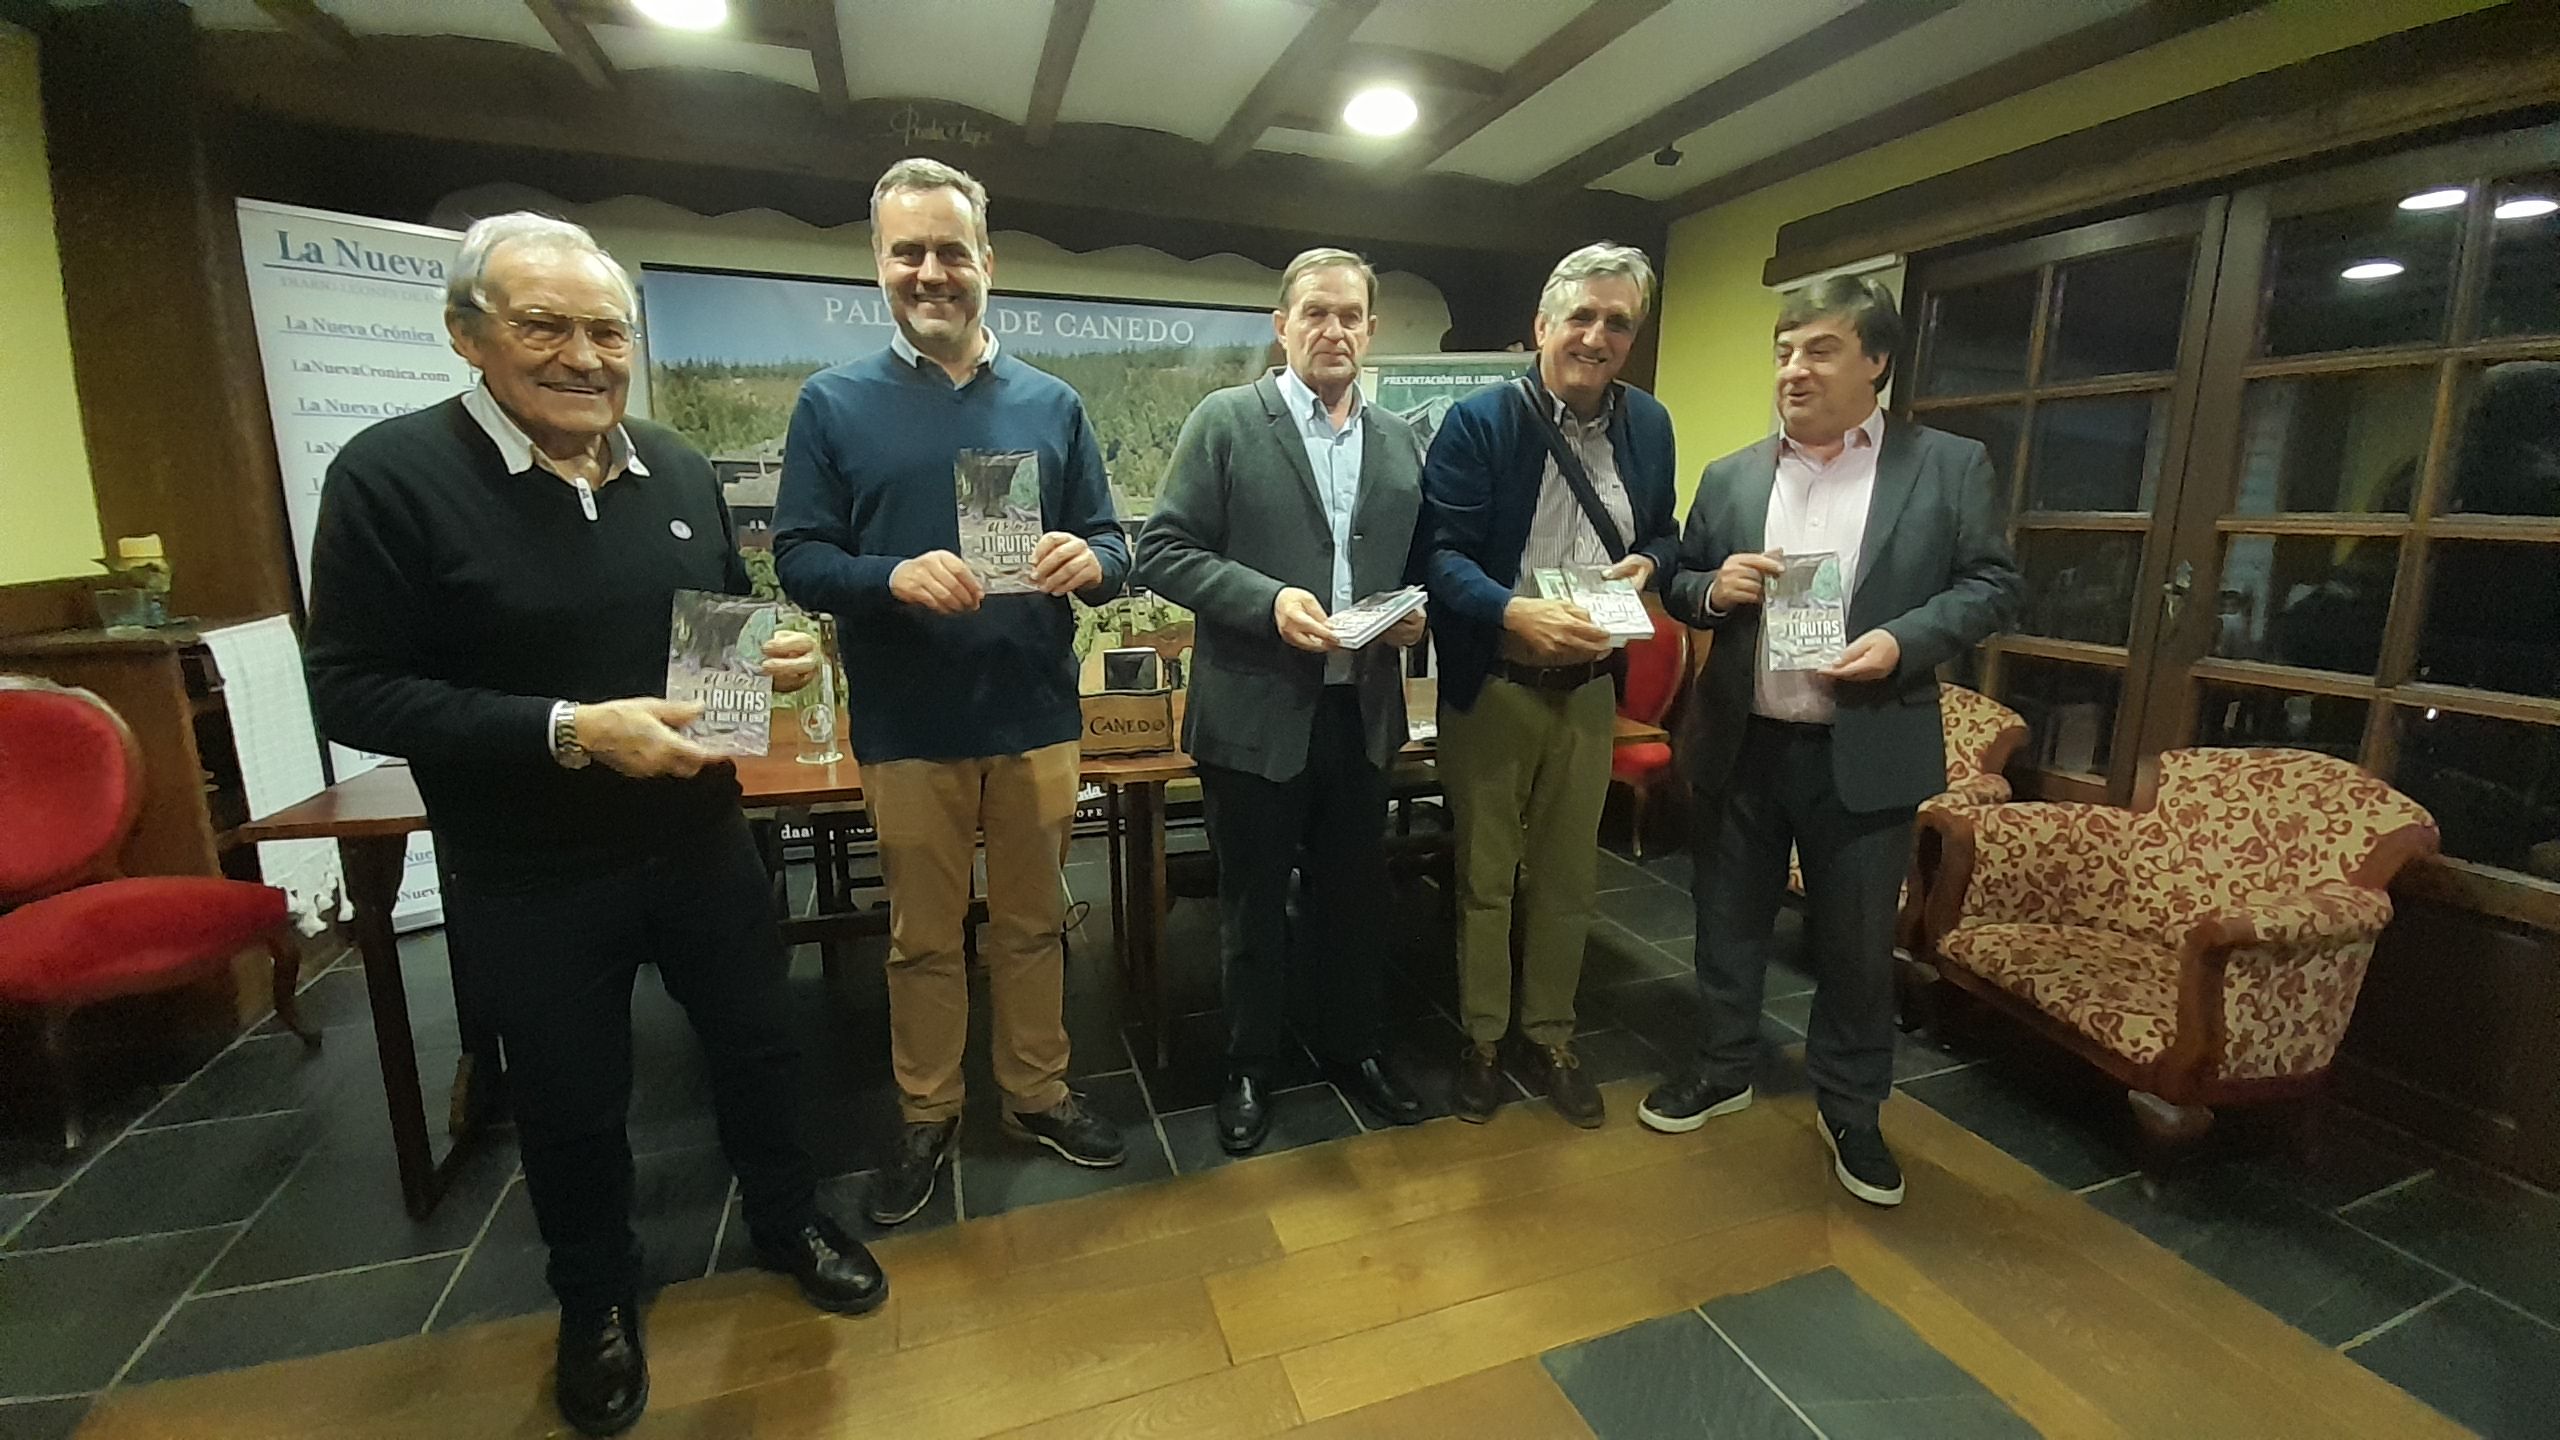 Presentación del libro con sus patrocinadores en el Palacio de Canedo. | MAR IGLESIAS